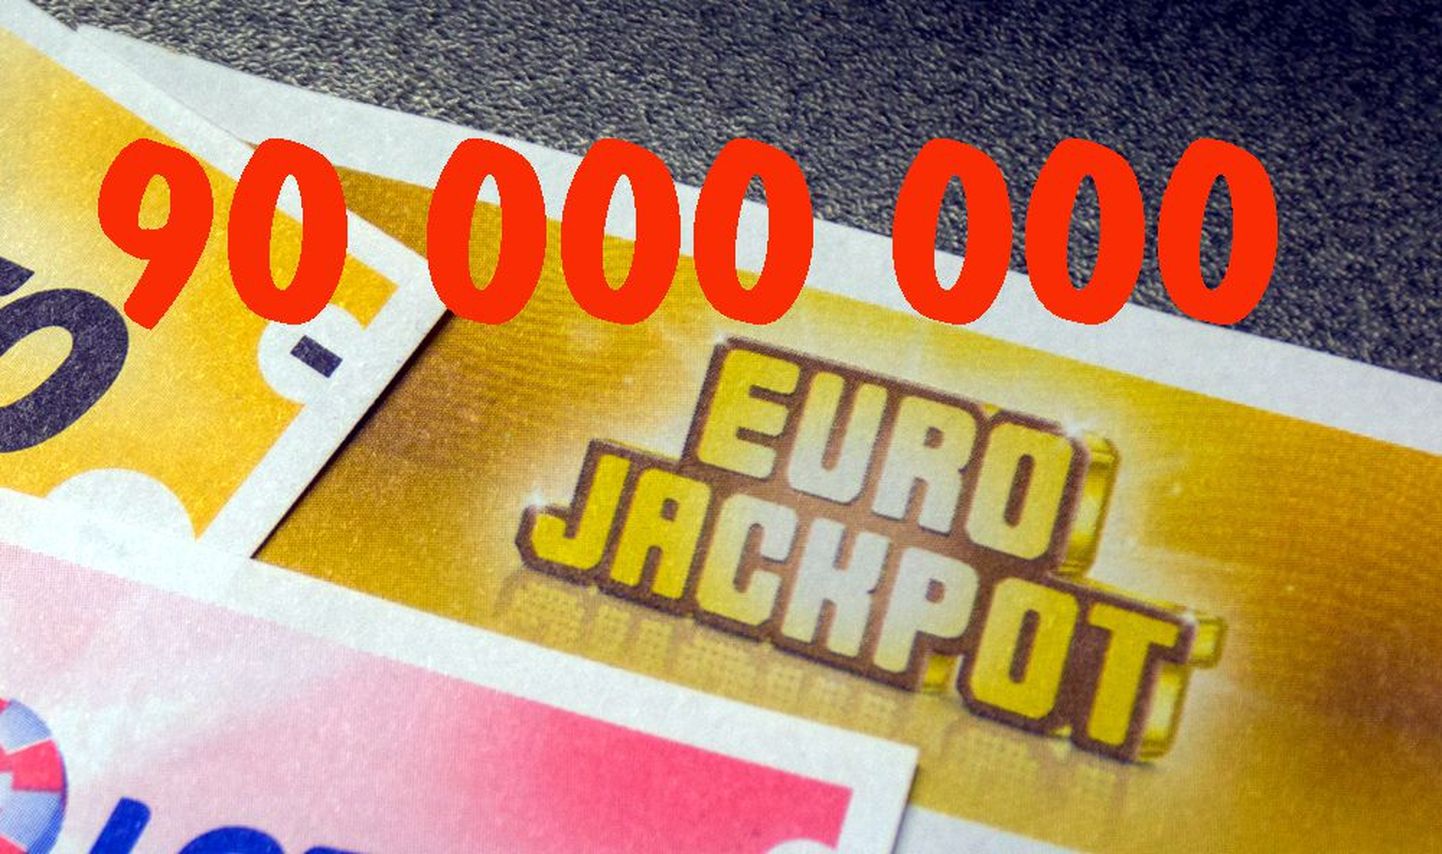 Максимальный выигрыш в Eurojackpot составил 90 000 000 евро.